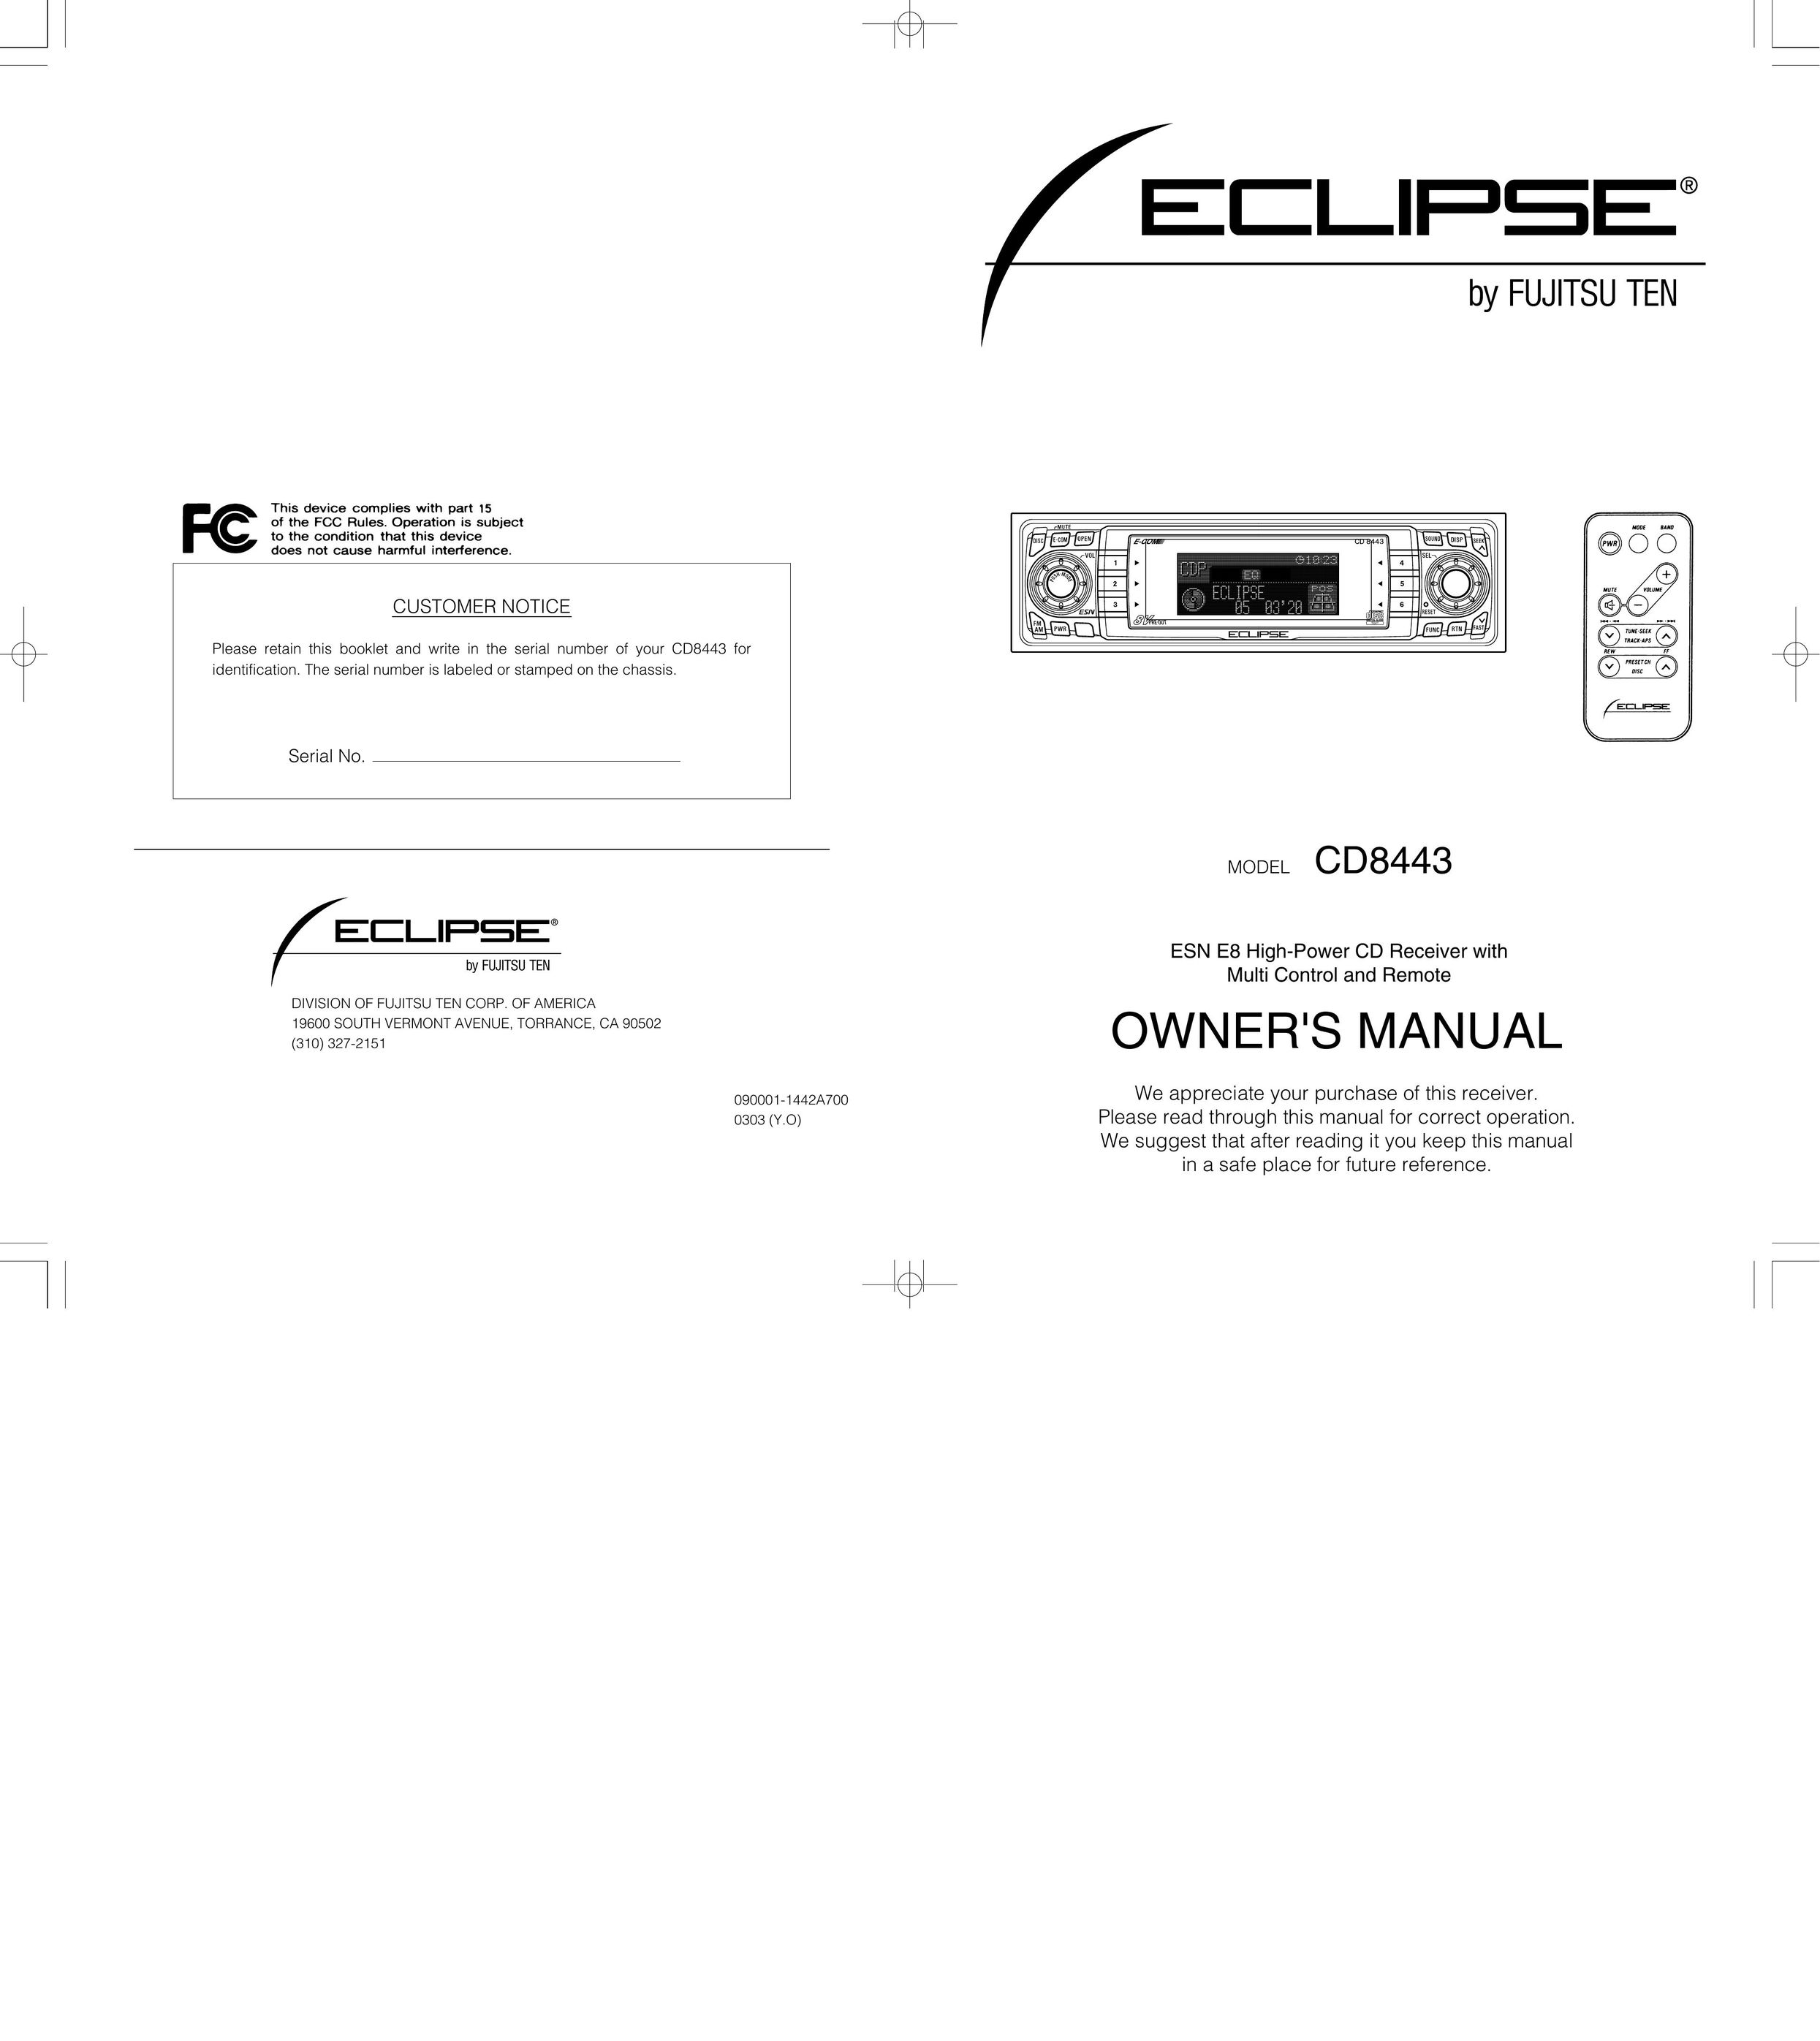 Eclipse - Fujitsu Ten CD8443 Car Satellite Radio System User Manual (Page 1)